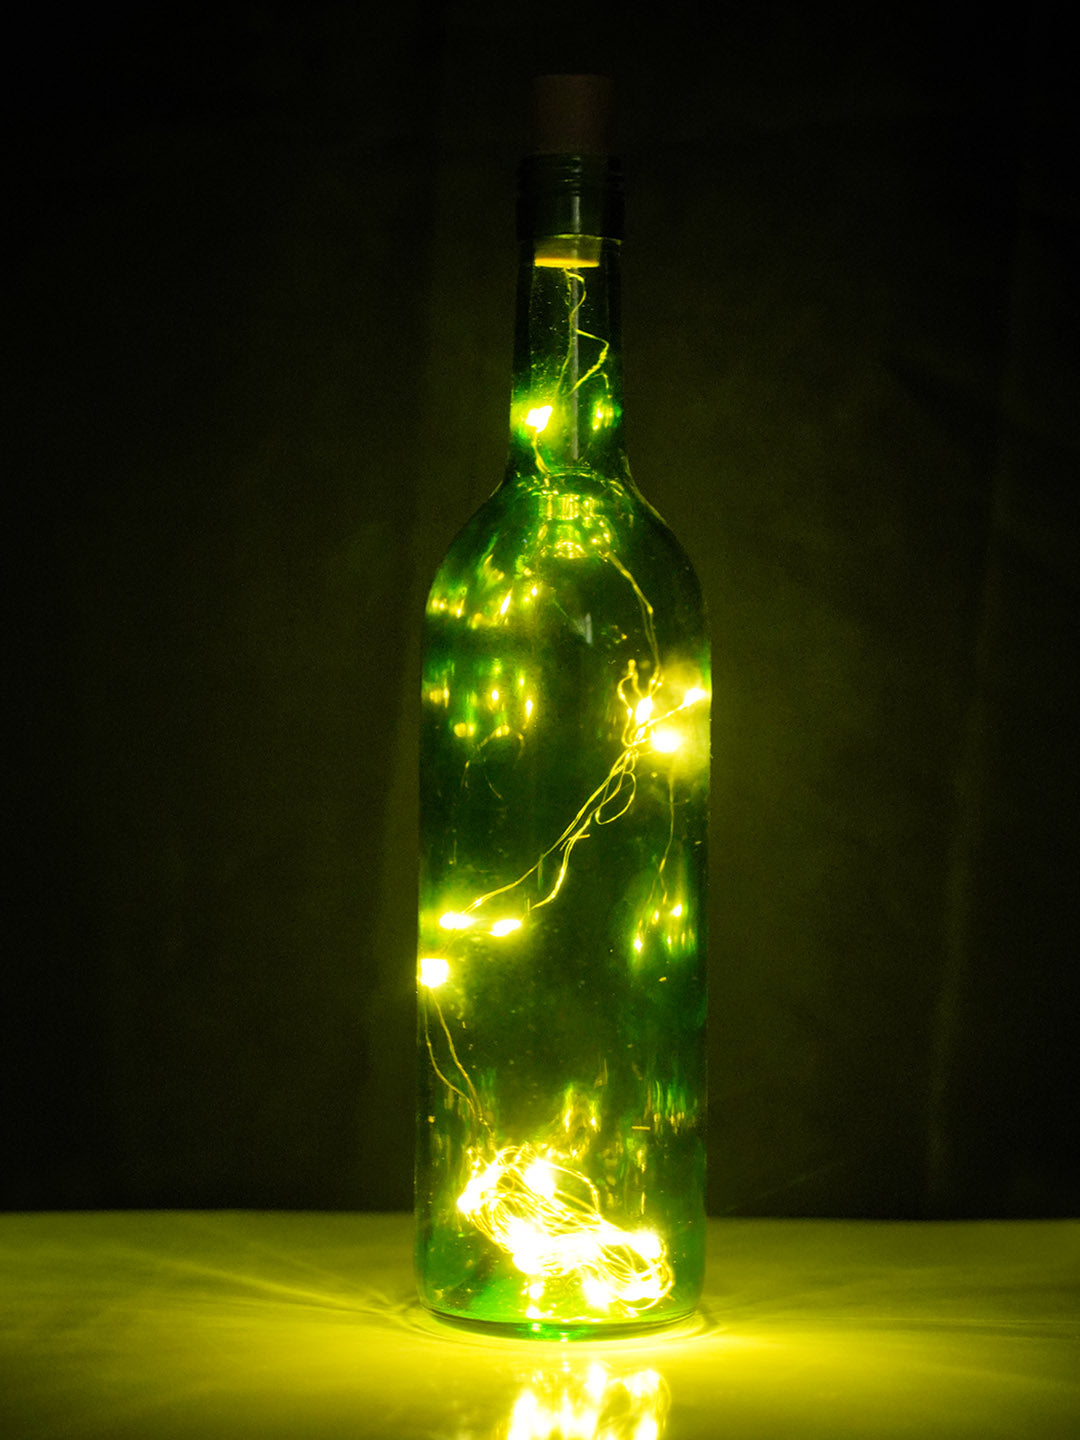 Bottle Cork led String Lights for Diwali Home & Festive Decoration (Pack of 2)